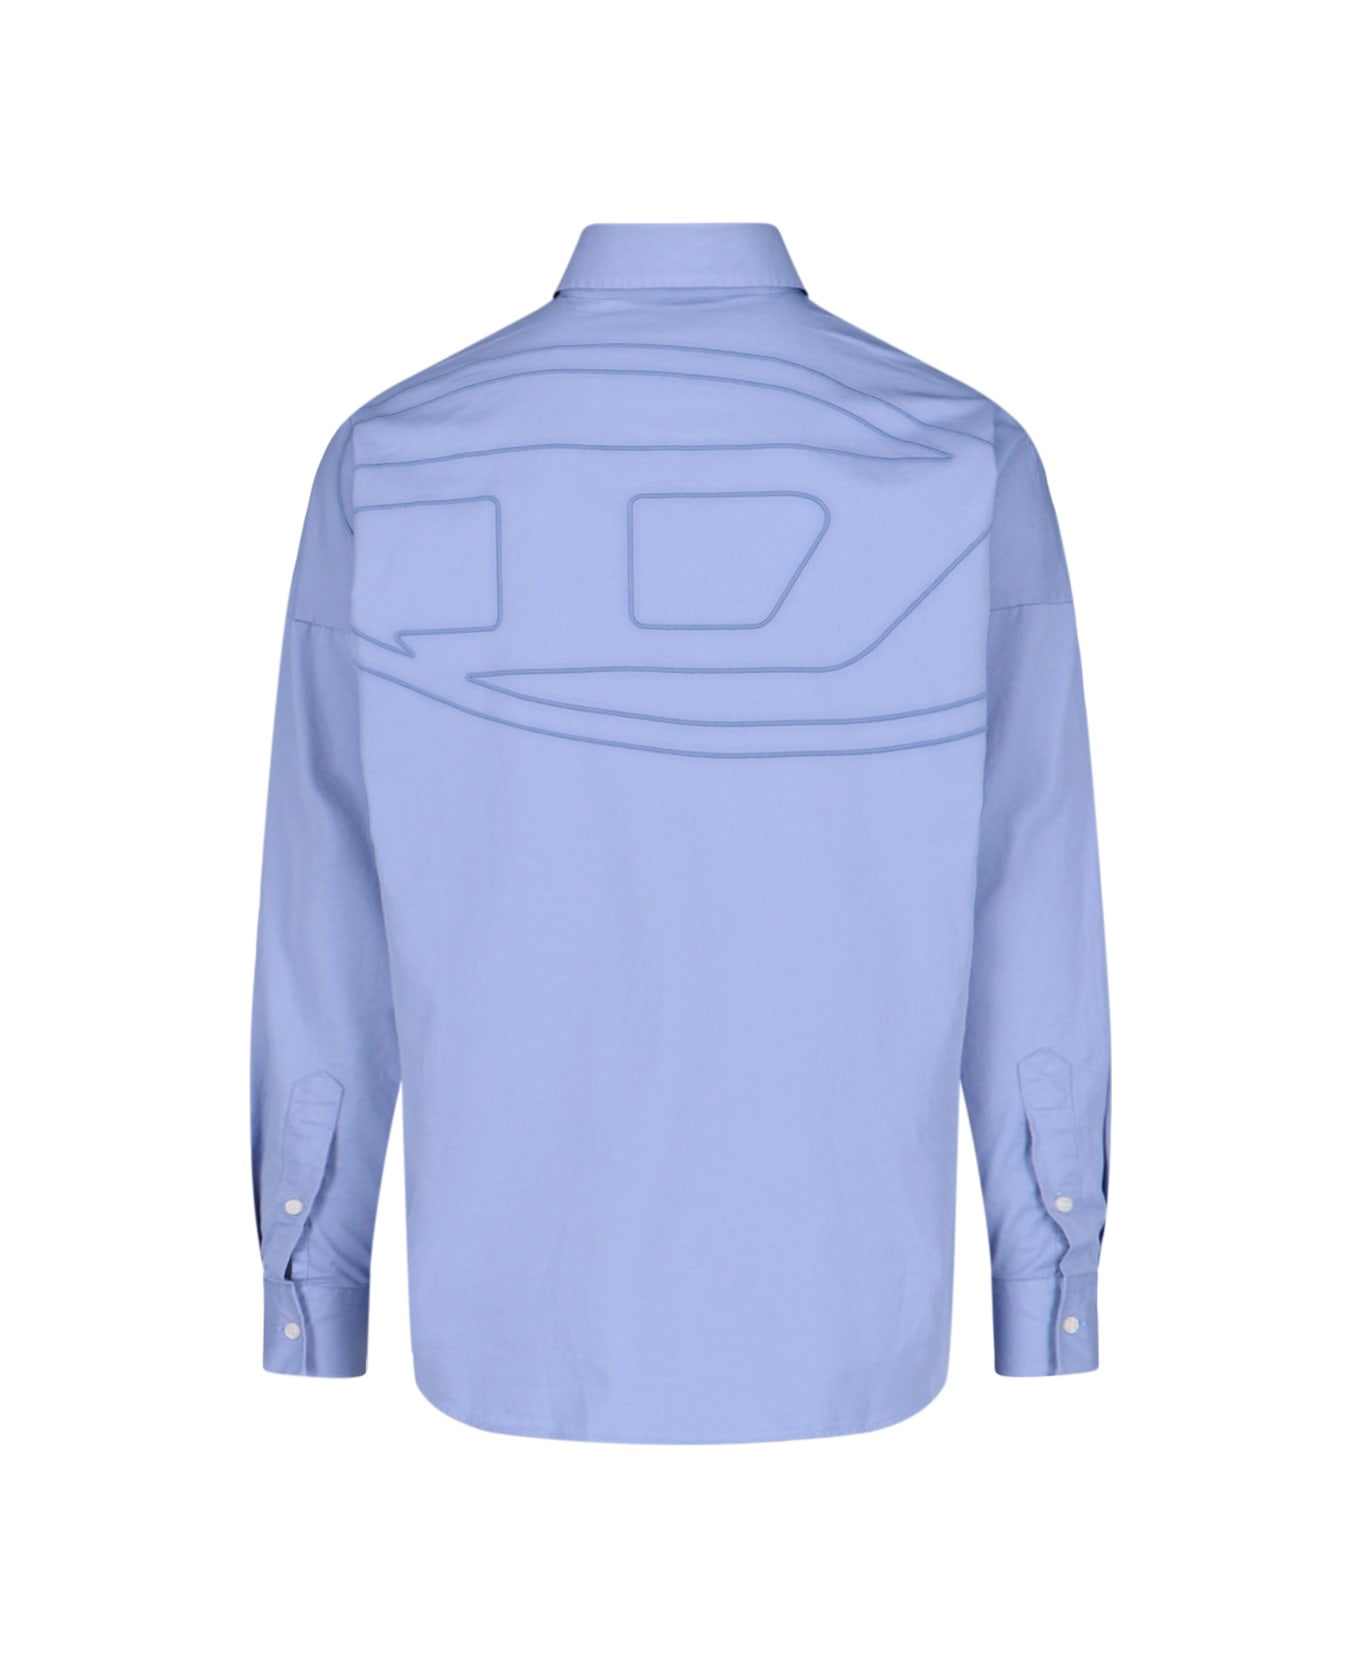 Diesel 'oval D' Shirt - Blue